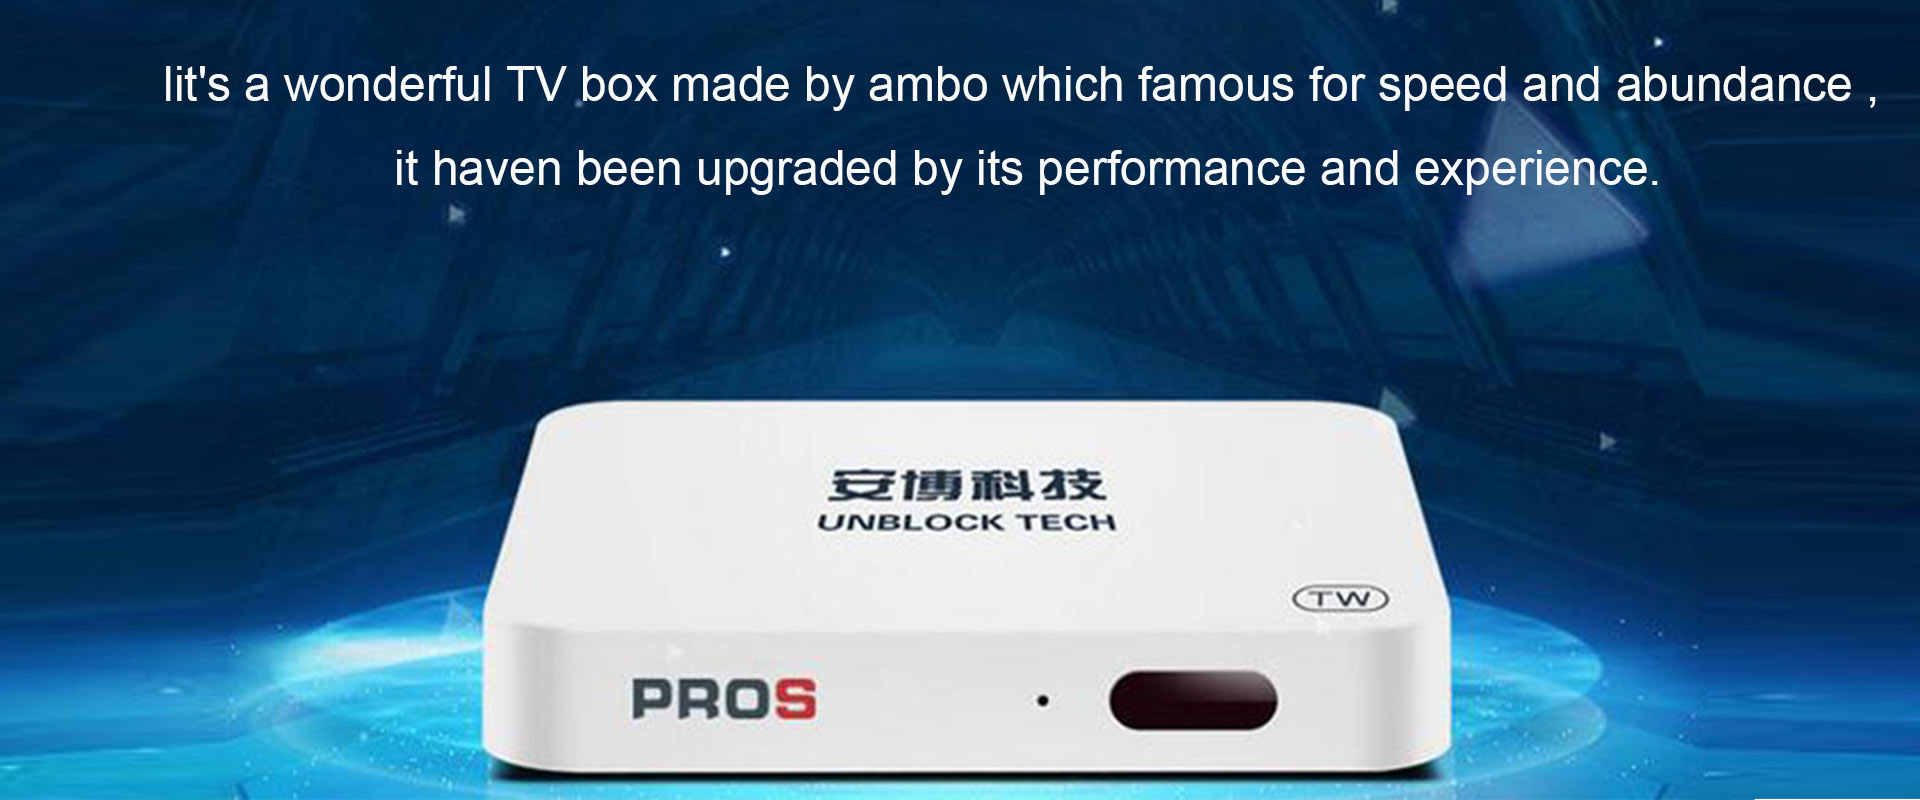 UBOX 7 TV Box - I-unblock ang UPROS UBOX Gen 7 Android TV Box 4K